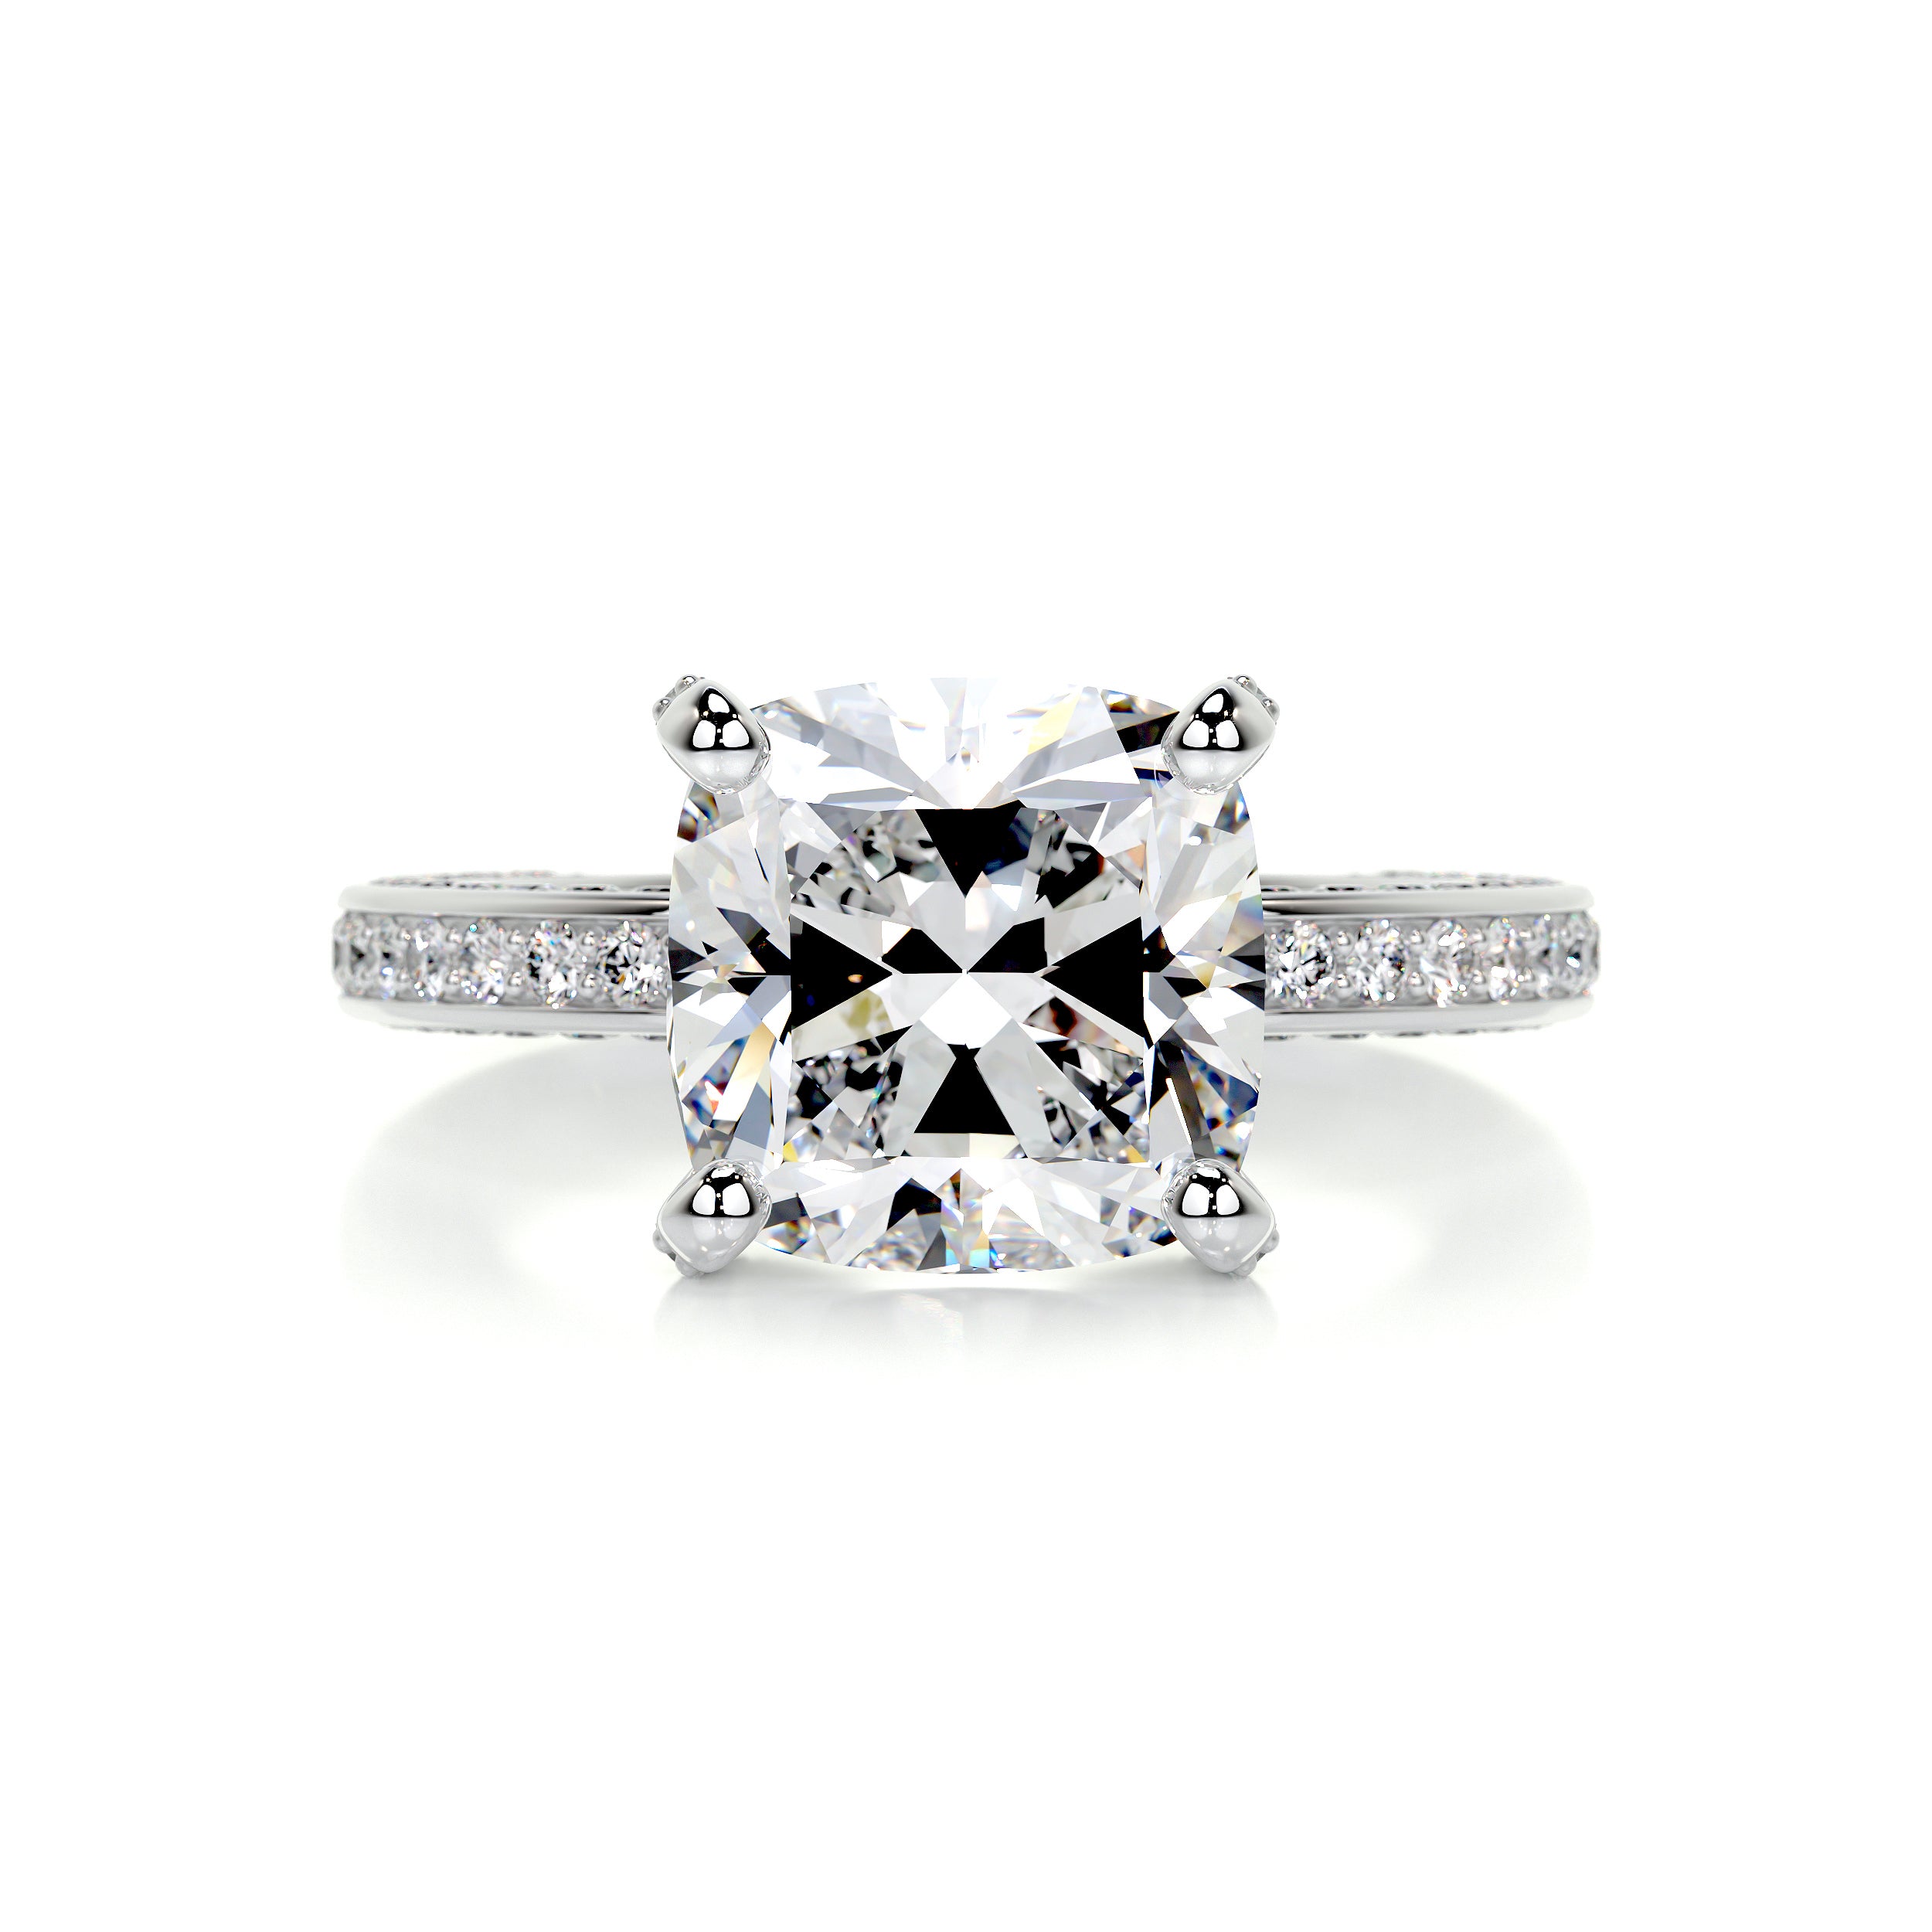 Lyric Diamond Engagement Ring   (2.75 Carat) -14K White Gold